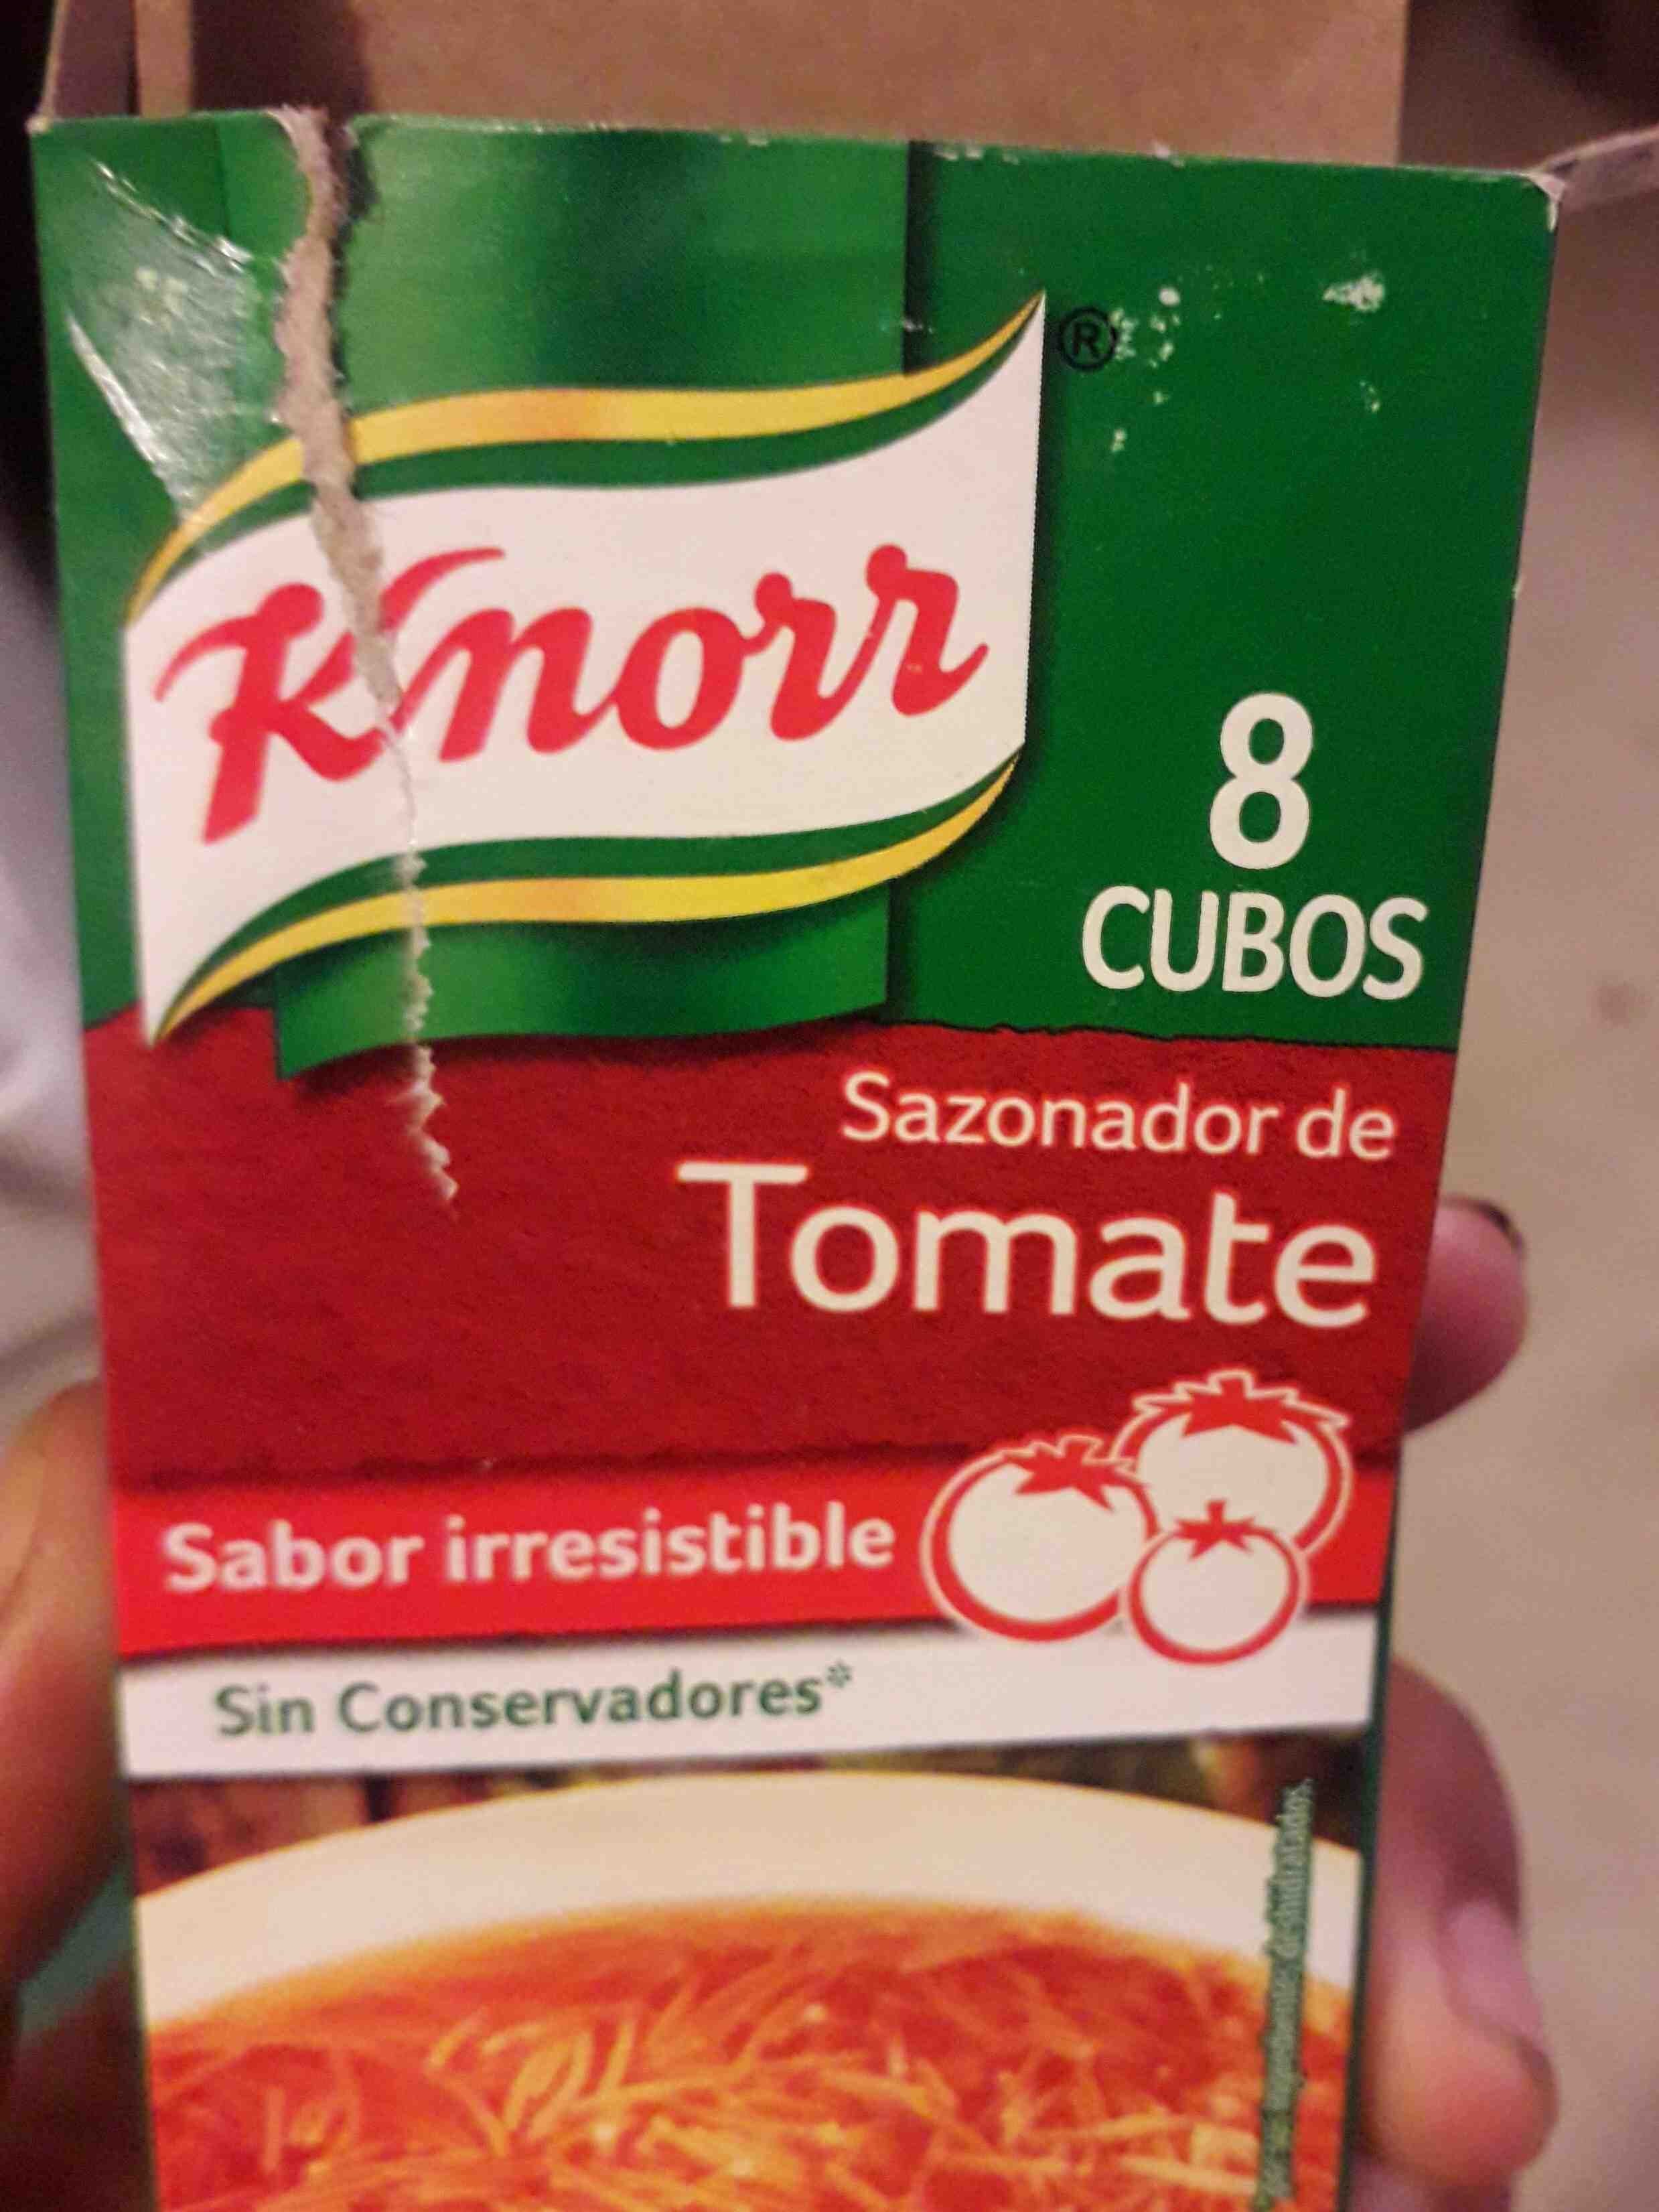 sazonador de tomate knorr - Producto - en